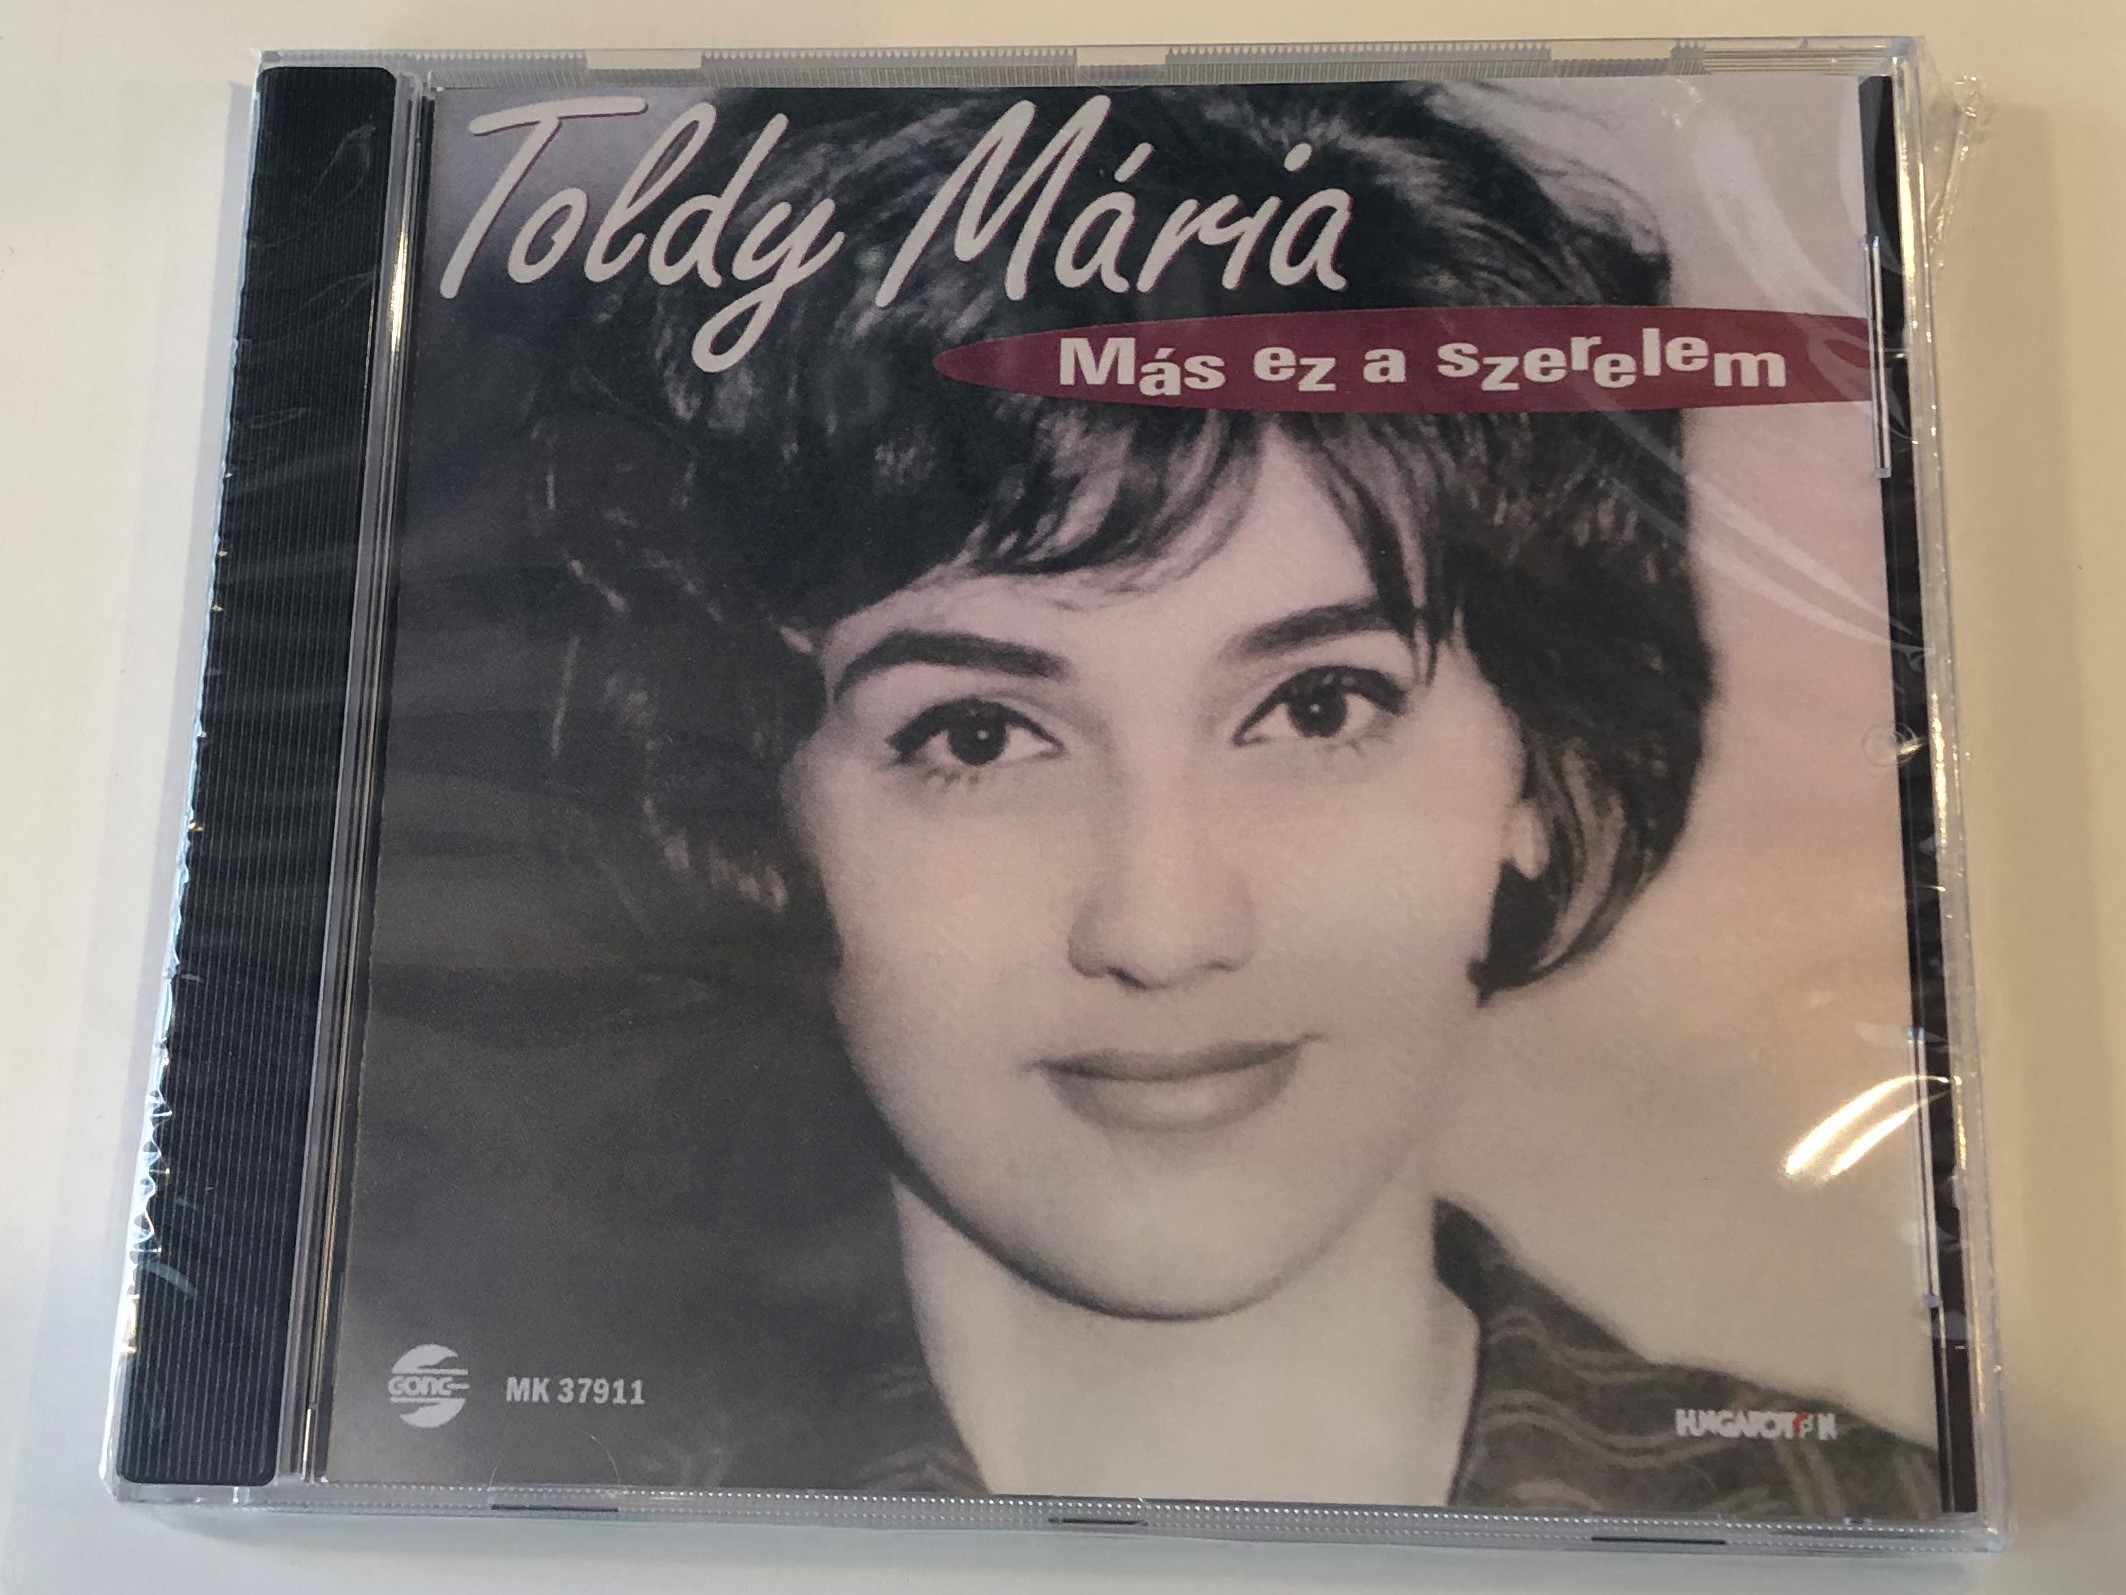 toldy-m-ria-m-s-ez-a-szerelem-gong-audio-cd-hcd-37911-1-.jpg